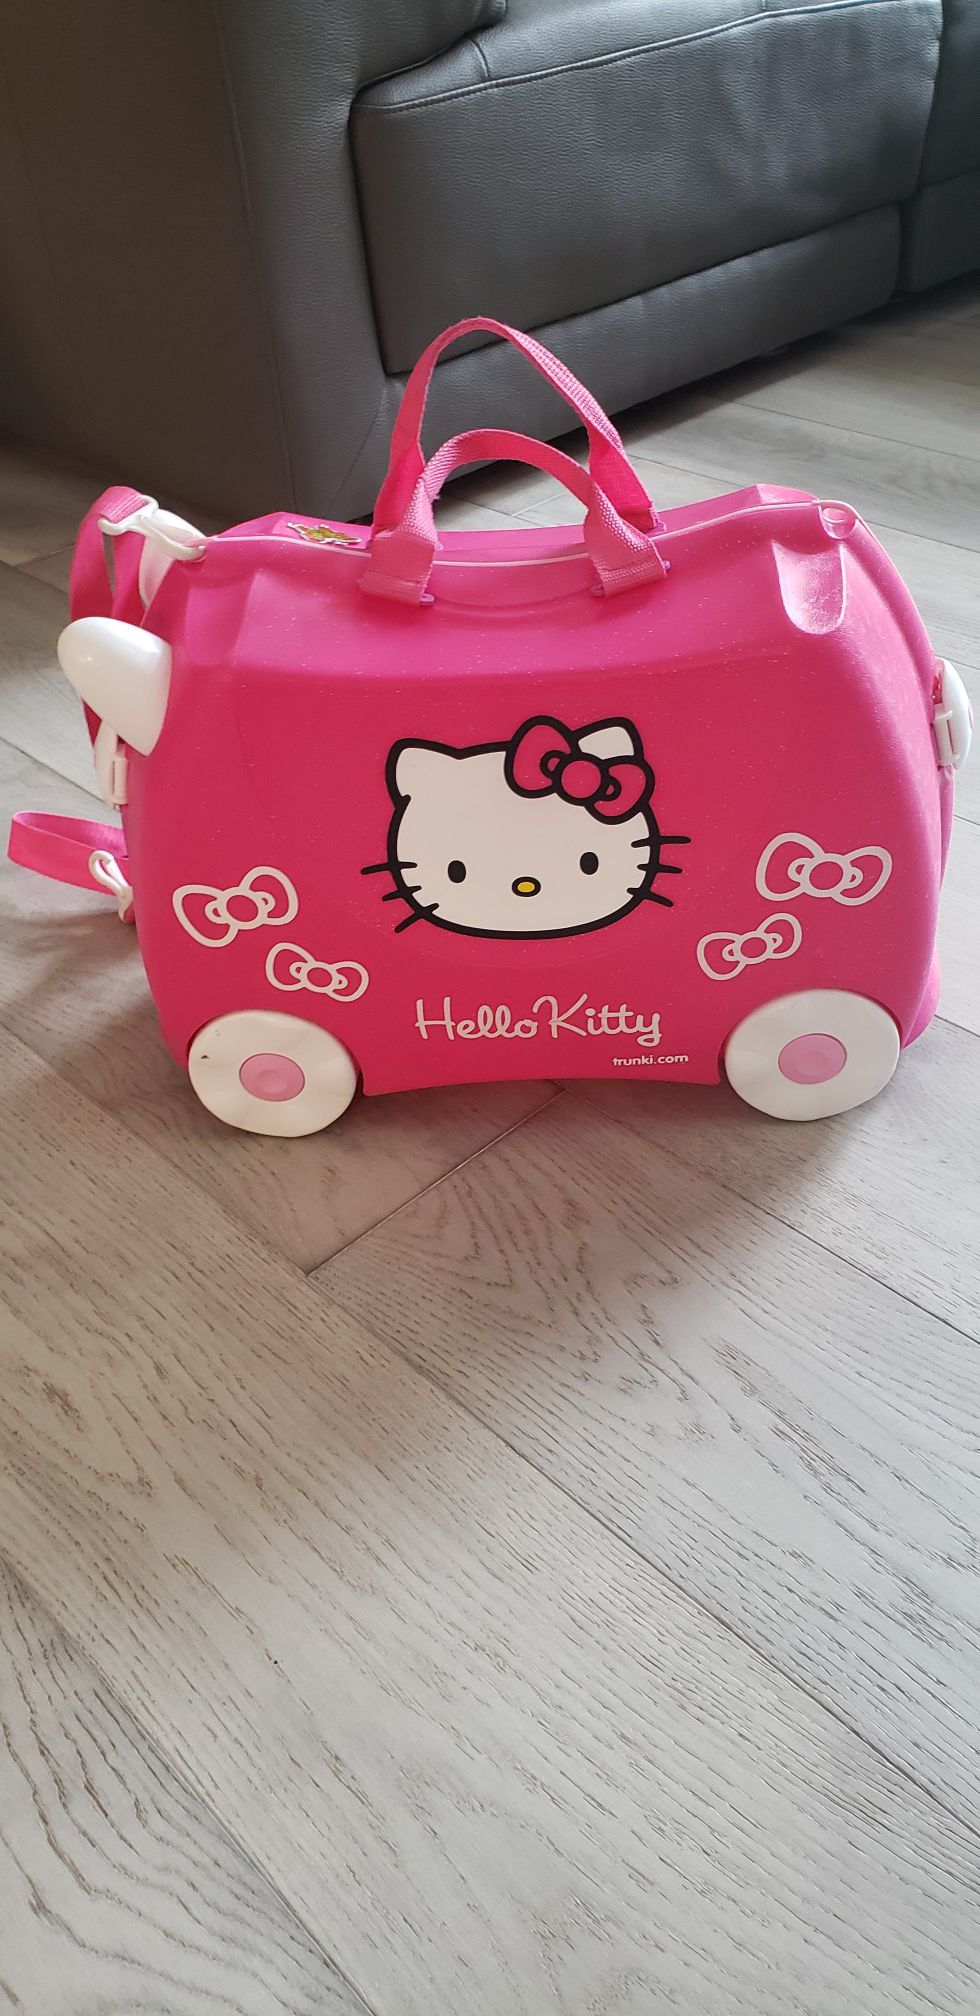 Hello Kitty Trunki suitcase